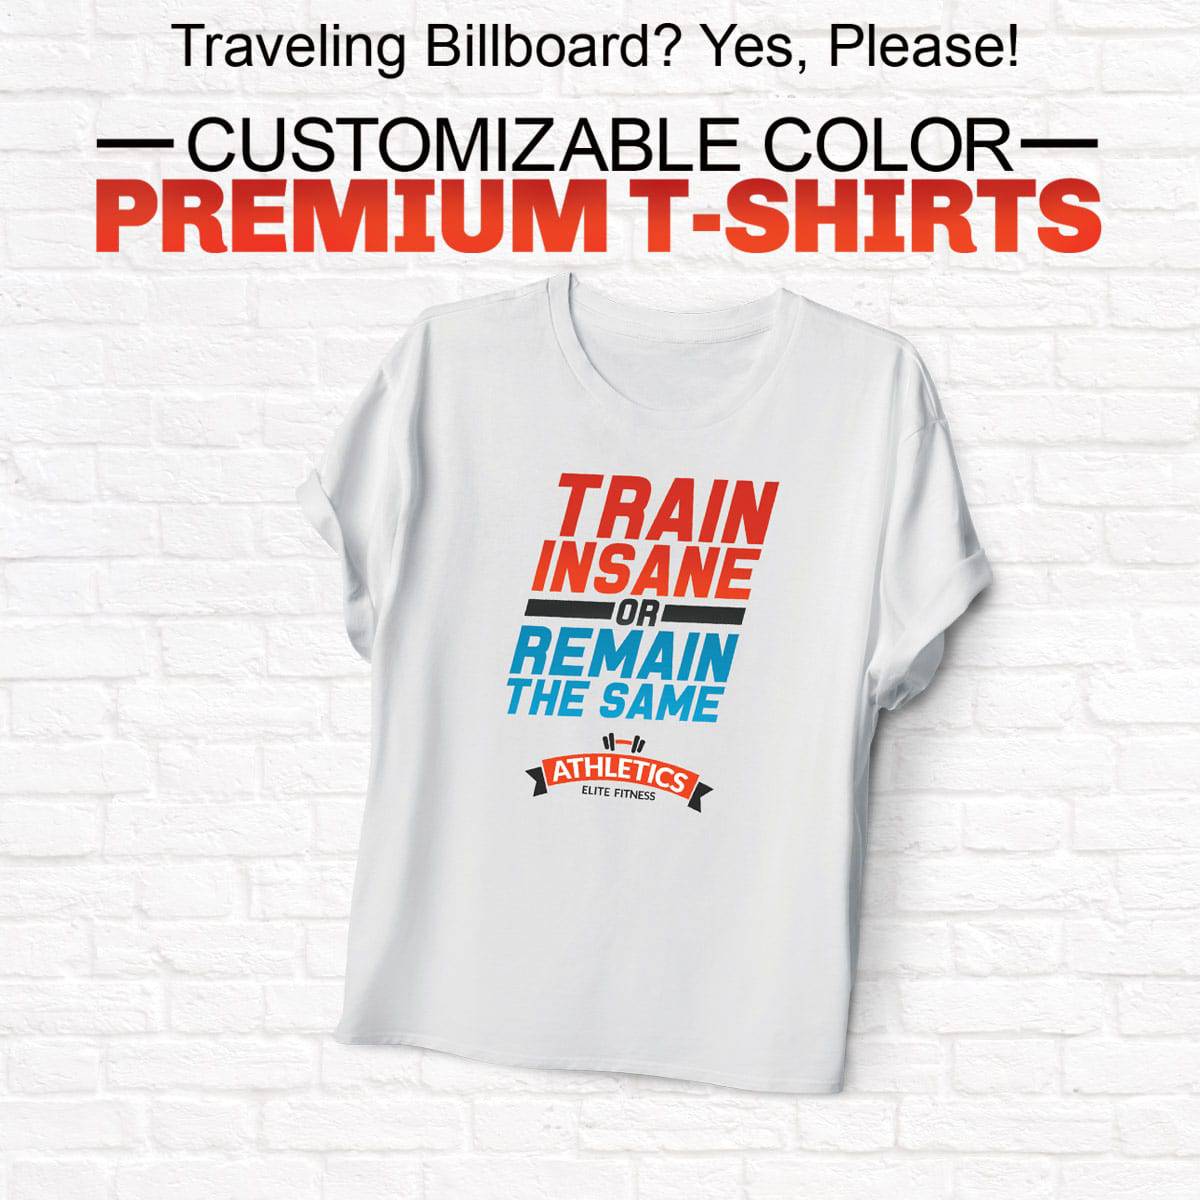 Customizeable T-Shirts